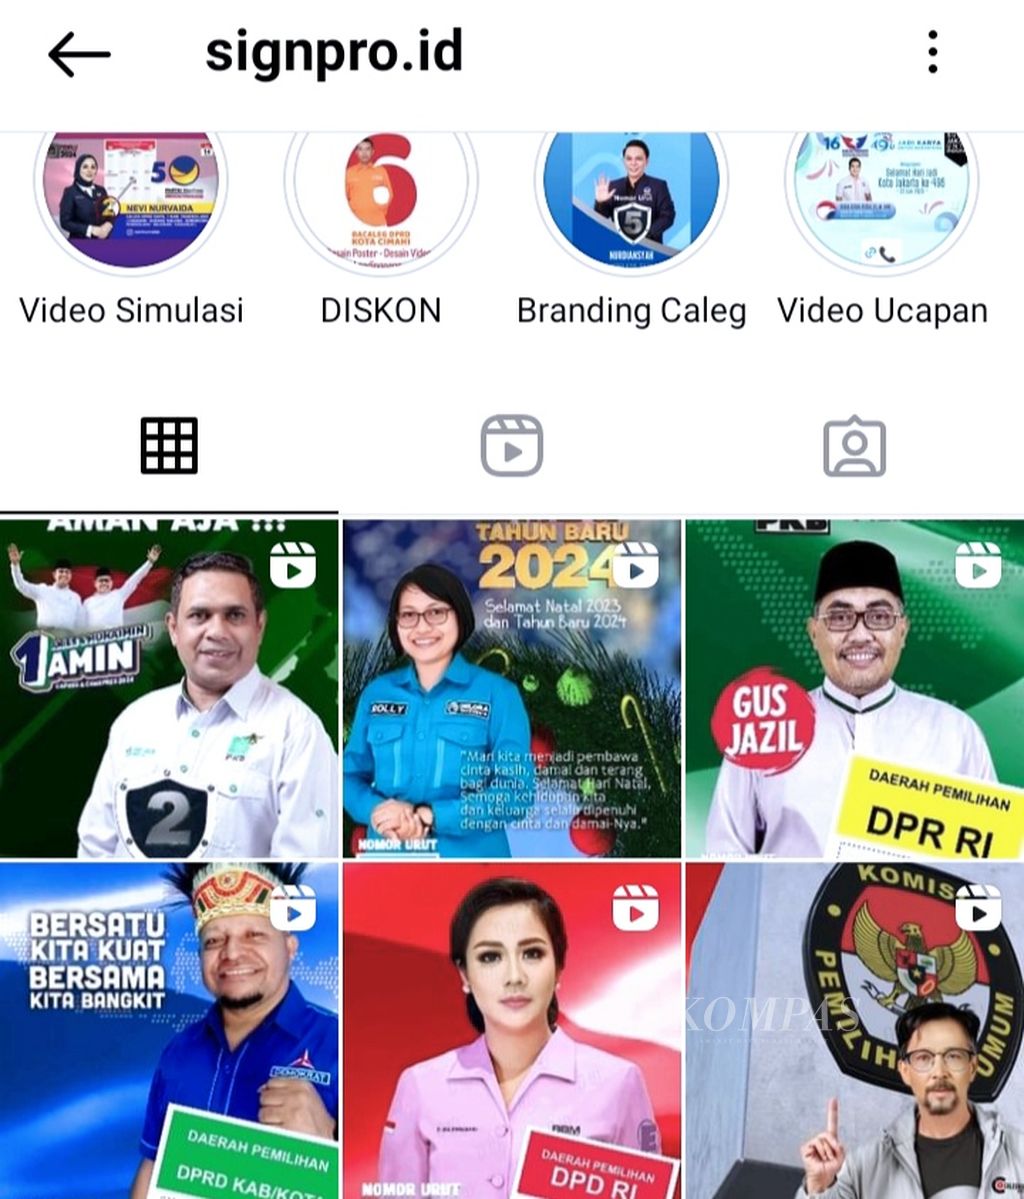 Sejumlah produk video kampanye yang dijadikan sebagai bahan promosi jasa desain Signpro.id di media sosial Instagram.